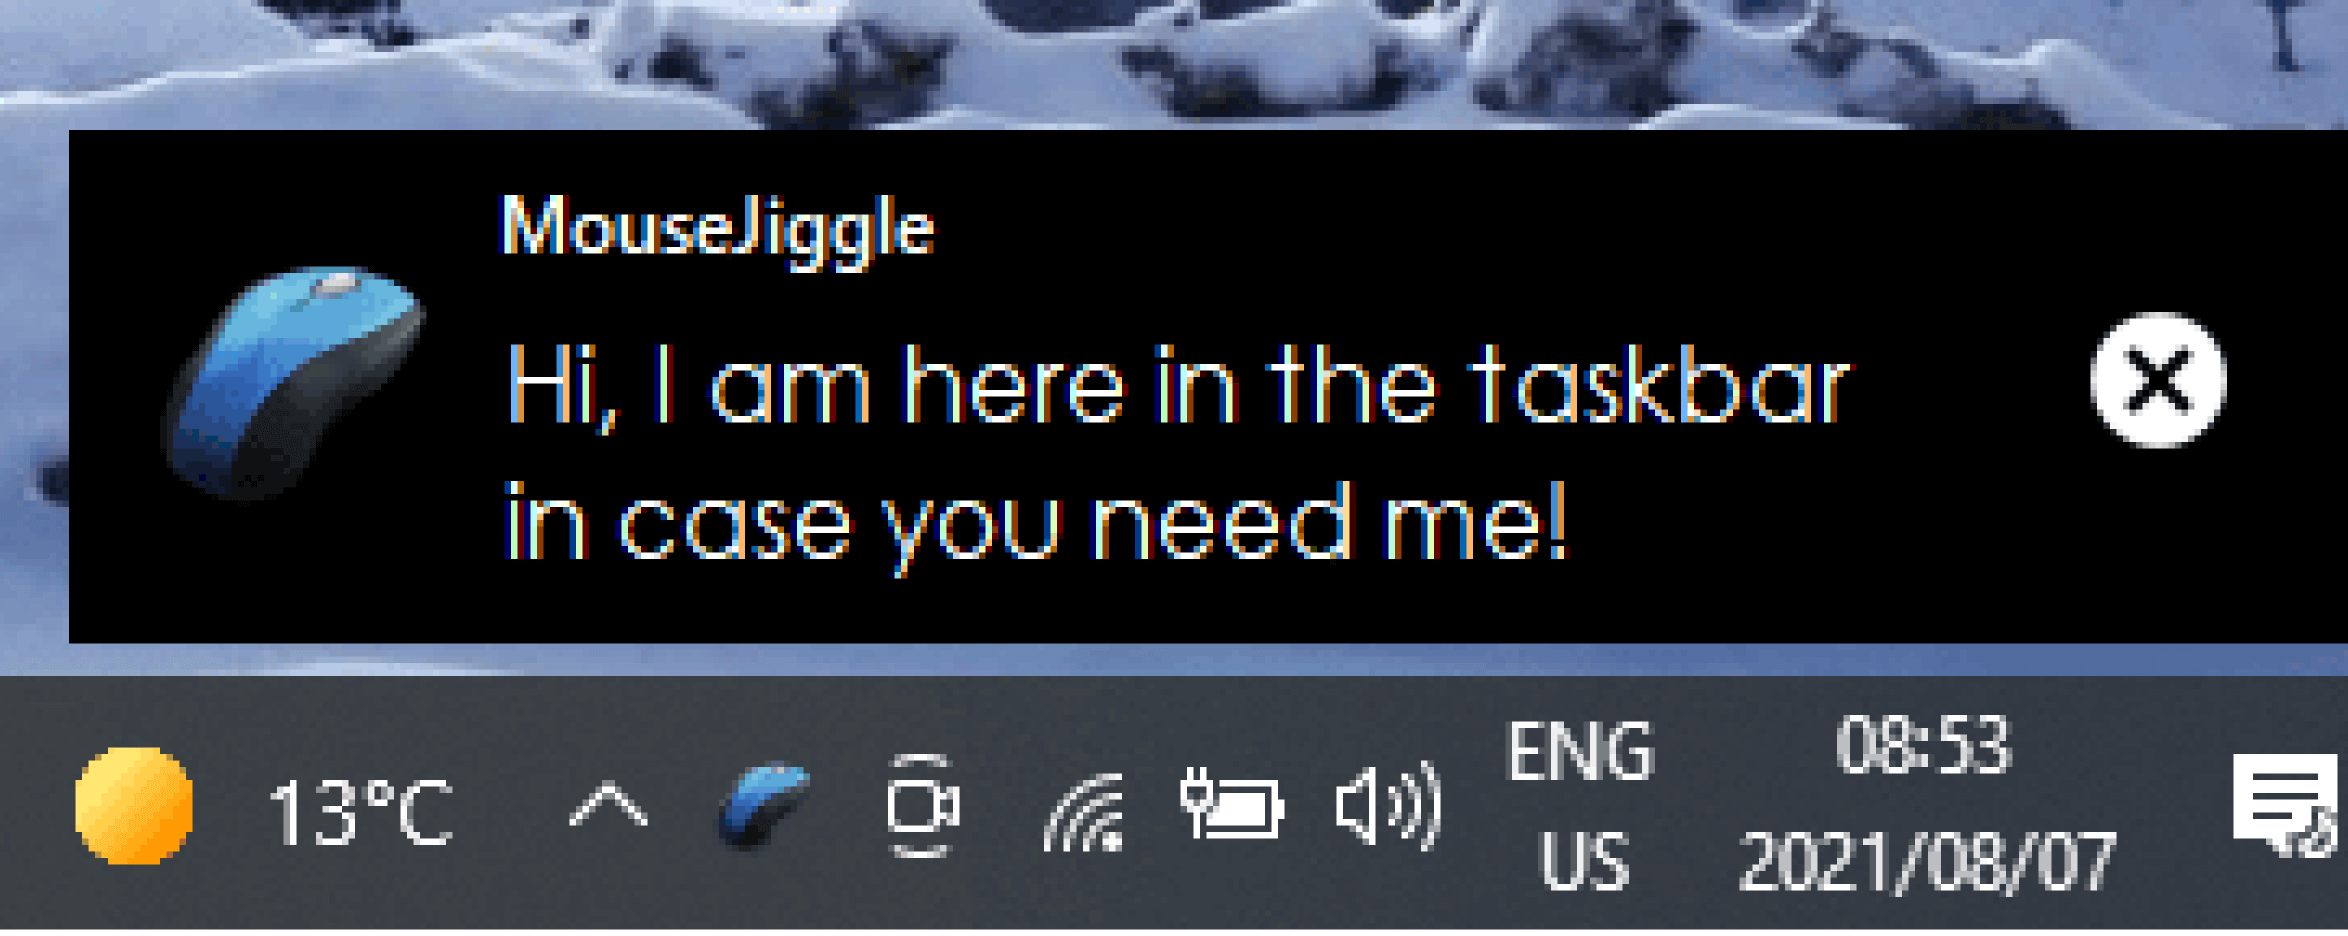 MouseJiggle 将安装在屏幕右下角的任务栏中。